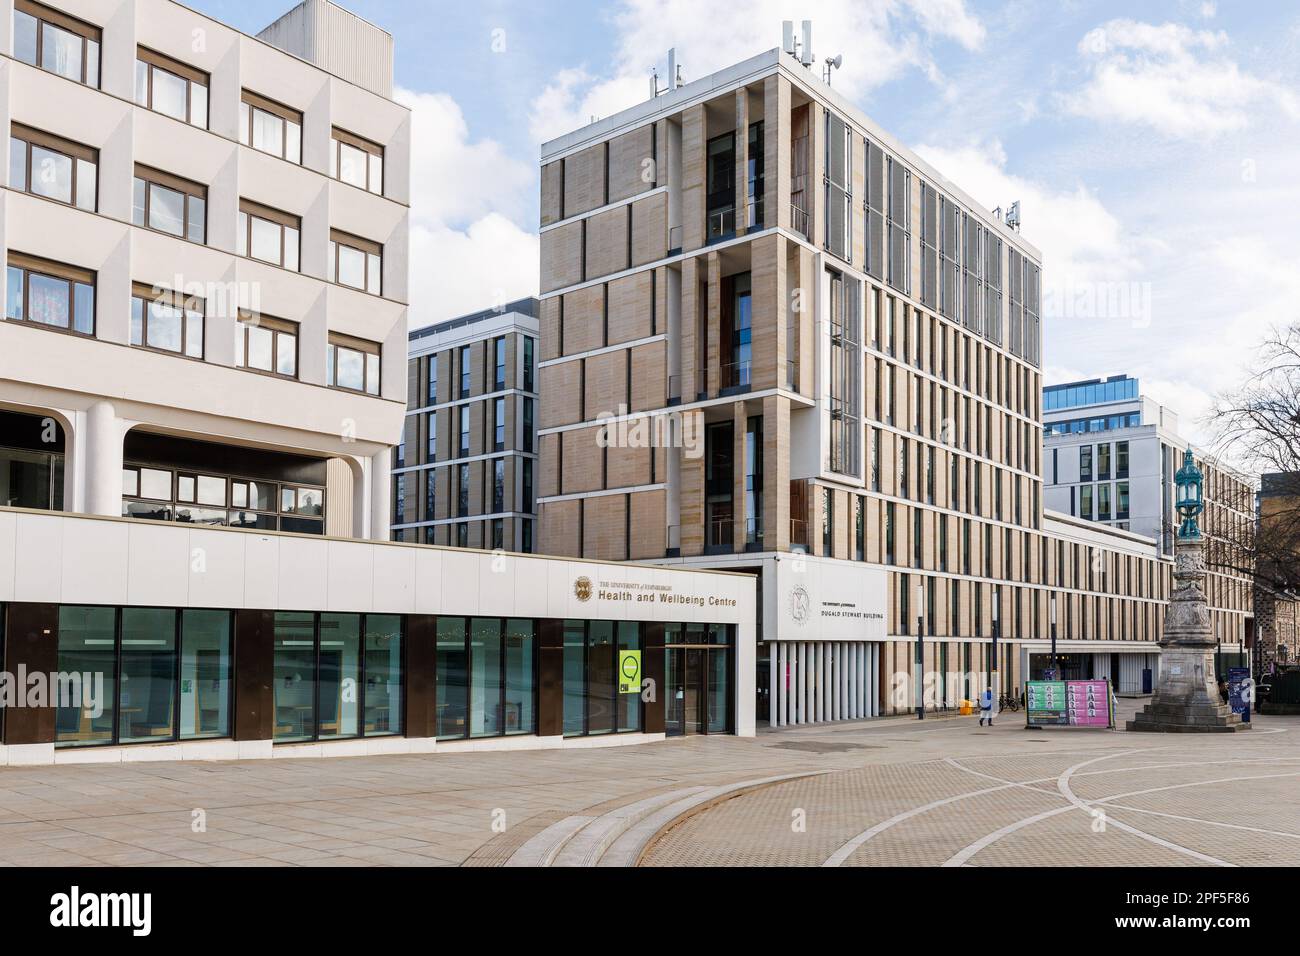 Le centre de santé et de bien-être récemment rénové de Bisto Square à l'Université d'Édimbourg Banque D'Images